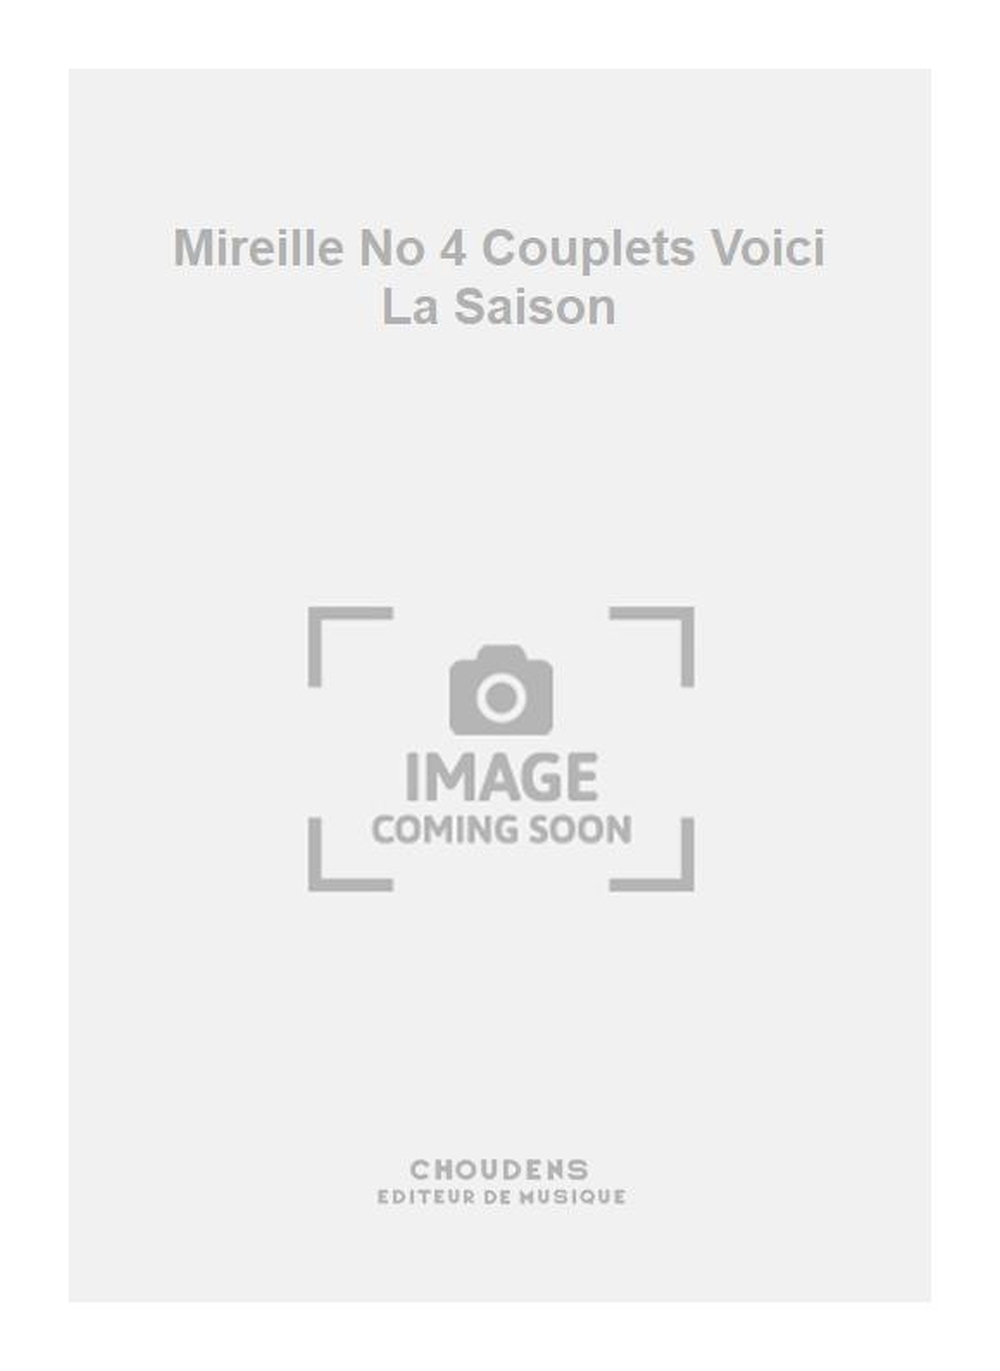 Charles Gounod: Mireille No 4 Couplets Voici La Saison